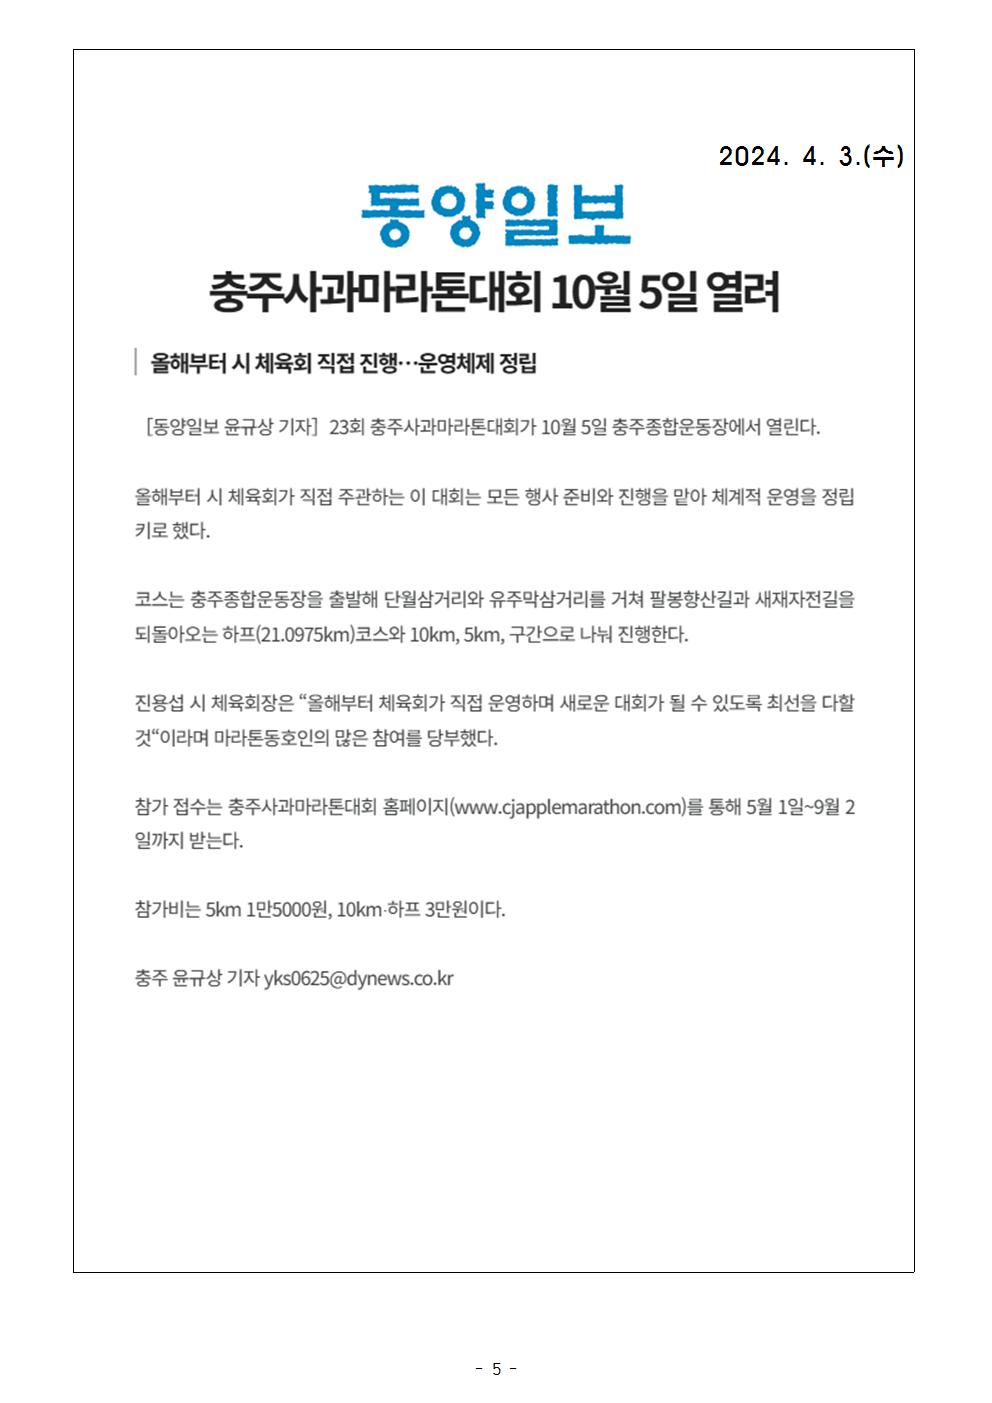 동양일보(4. 2일).jpg